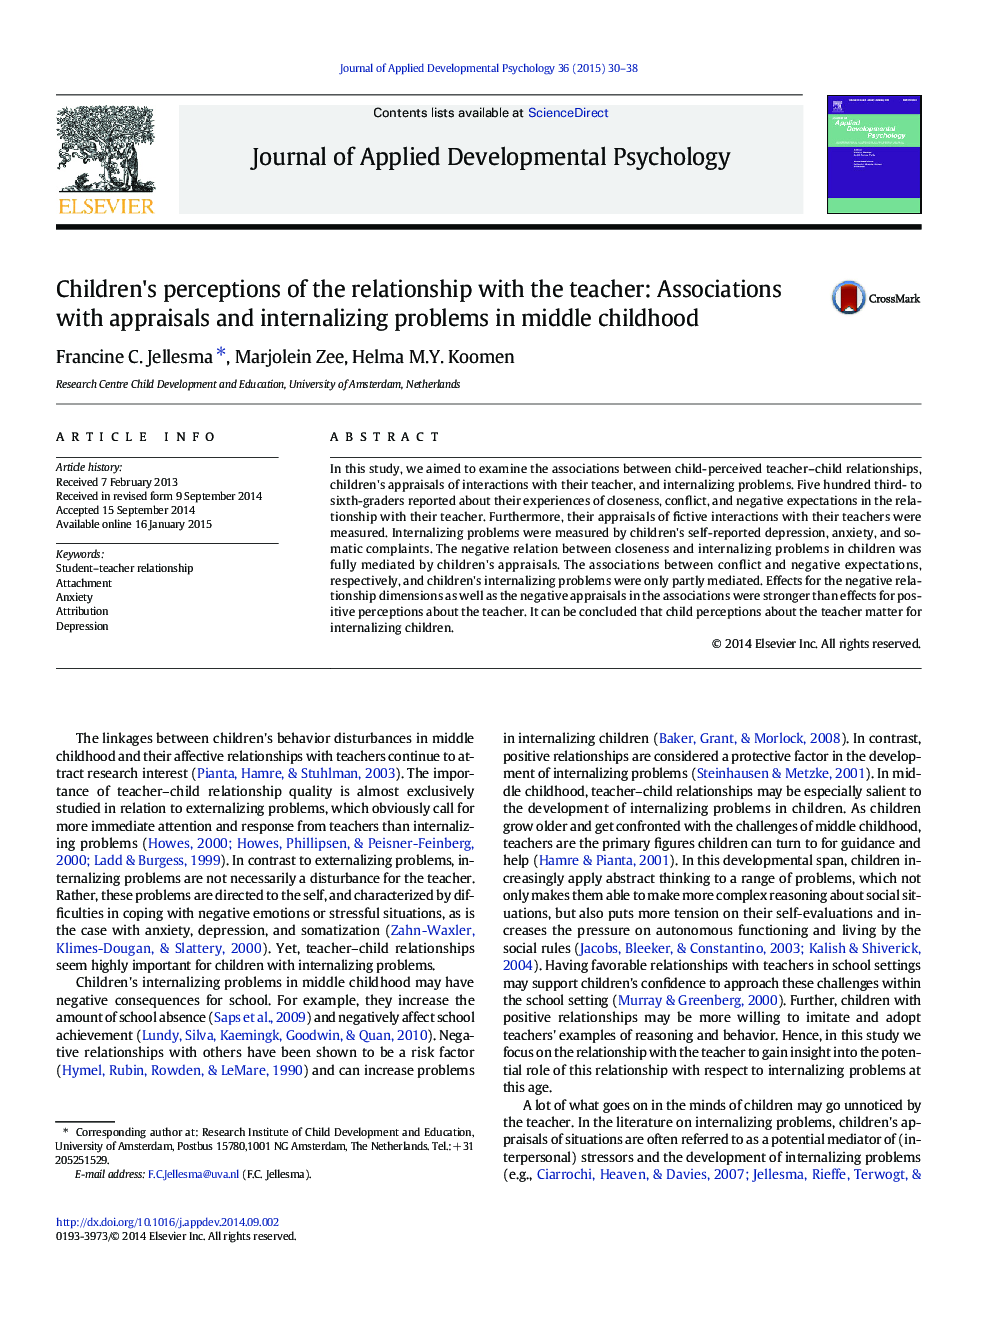 برداشت کودکان از رابطه با معلم: ارتباط با ارزیابی و مشکلات درونی در دوران میانی کودکی 